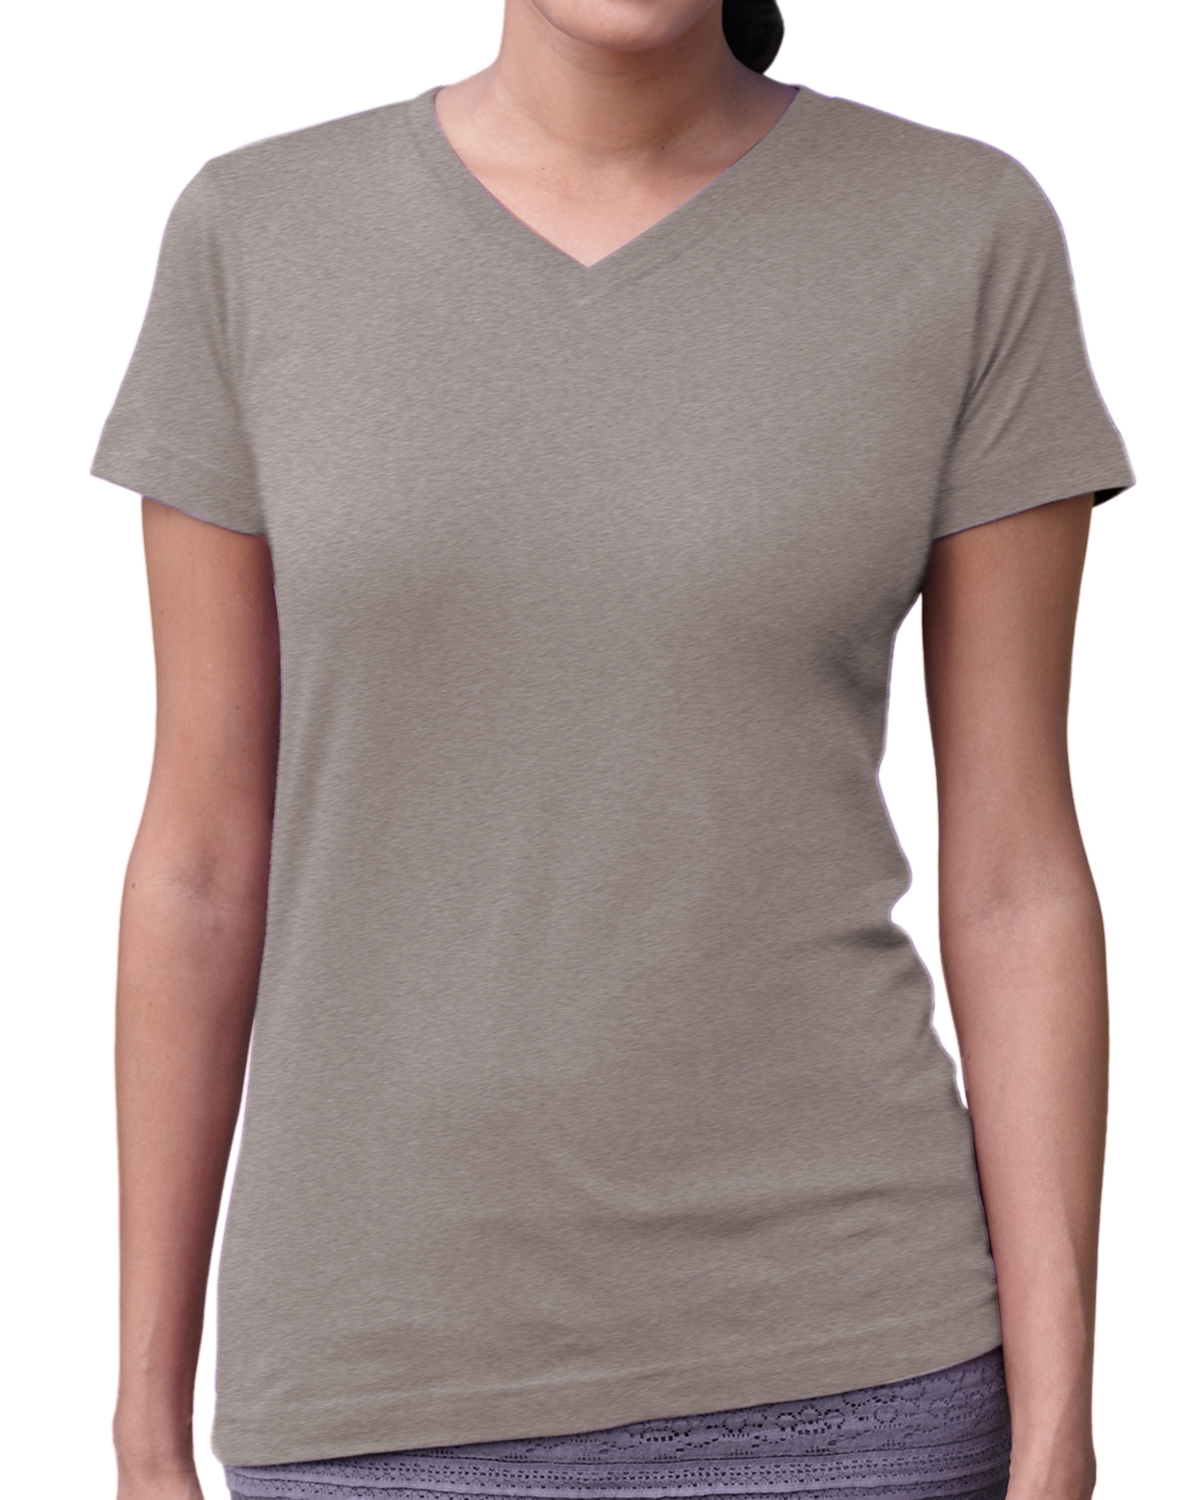 LAT Ladies Fine Jersey V-Neck T-Shirt Womens S M L XL 2XL 3XL 3507 